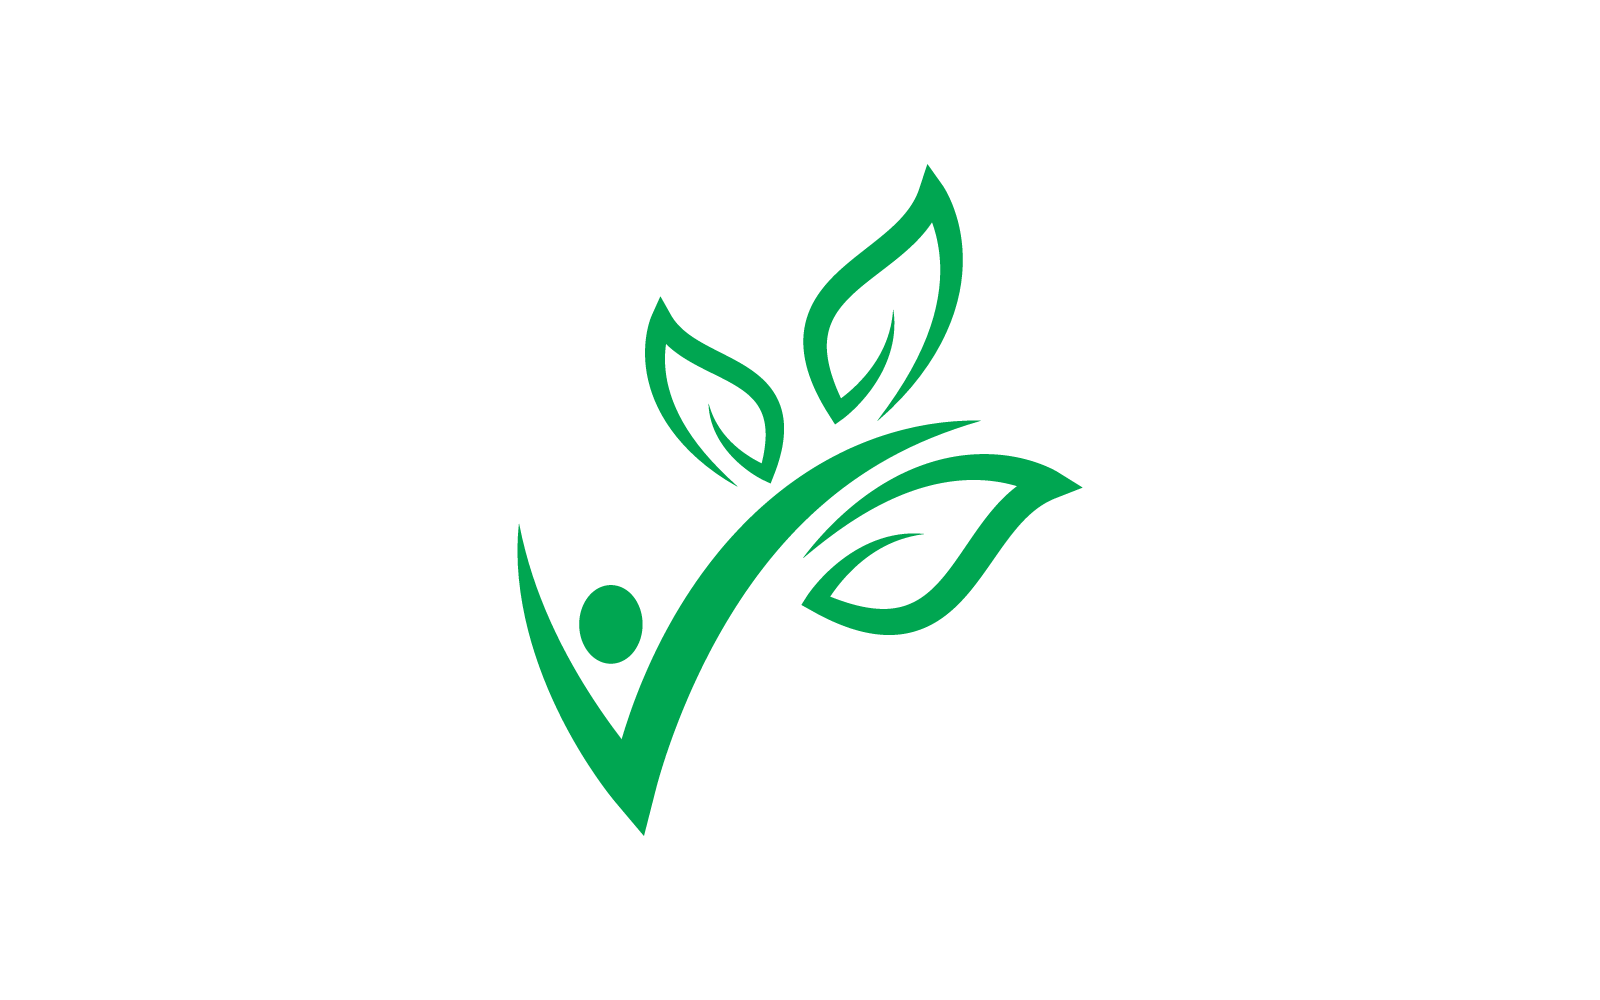 Green leaf illustration nature logo vector flat design Logo Template